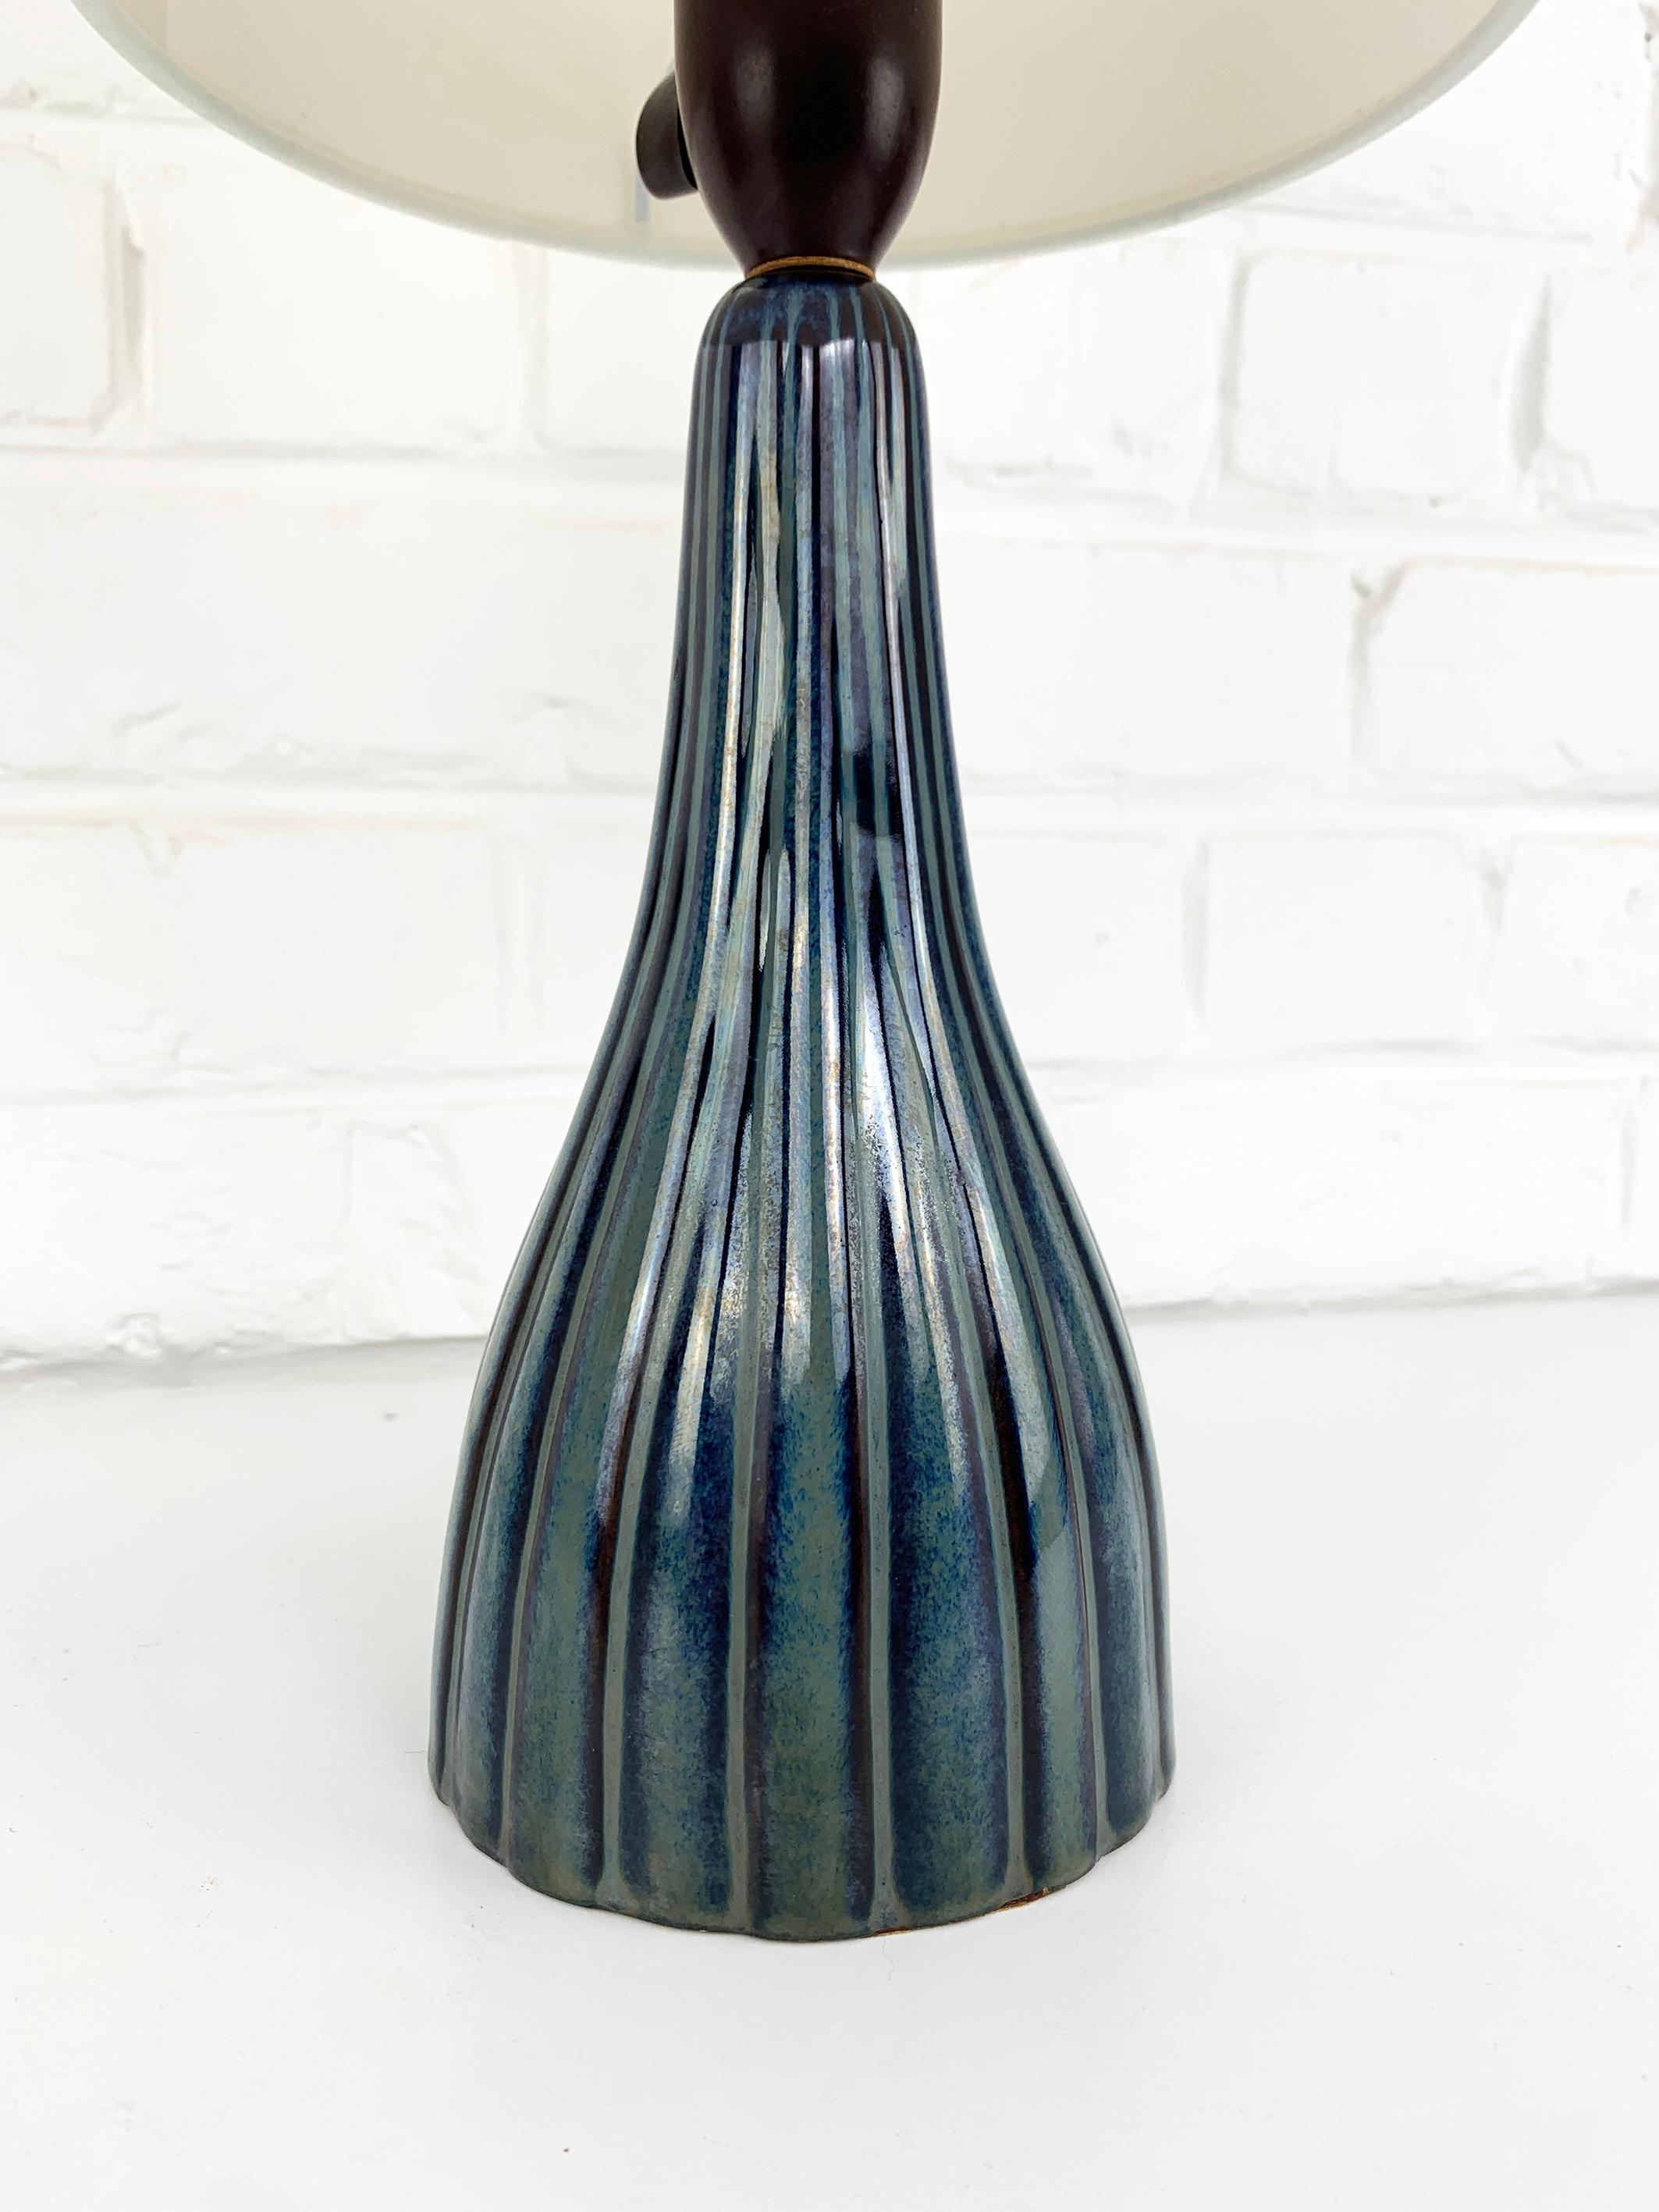 Lampe de table danoise en céramique du milieu du siècle dernier, datant des années 1950-60. Design/One très élégant, décoré d'un motif à rayures dans des couleurs bleu-gris.

Designer inconnu, mais reste le style des créations de Svend Aage Jensen